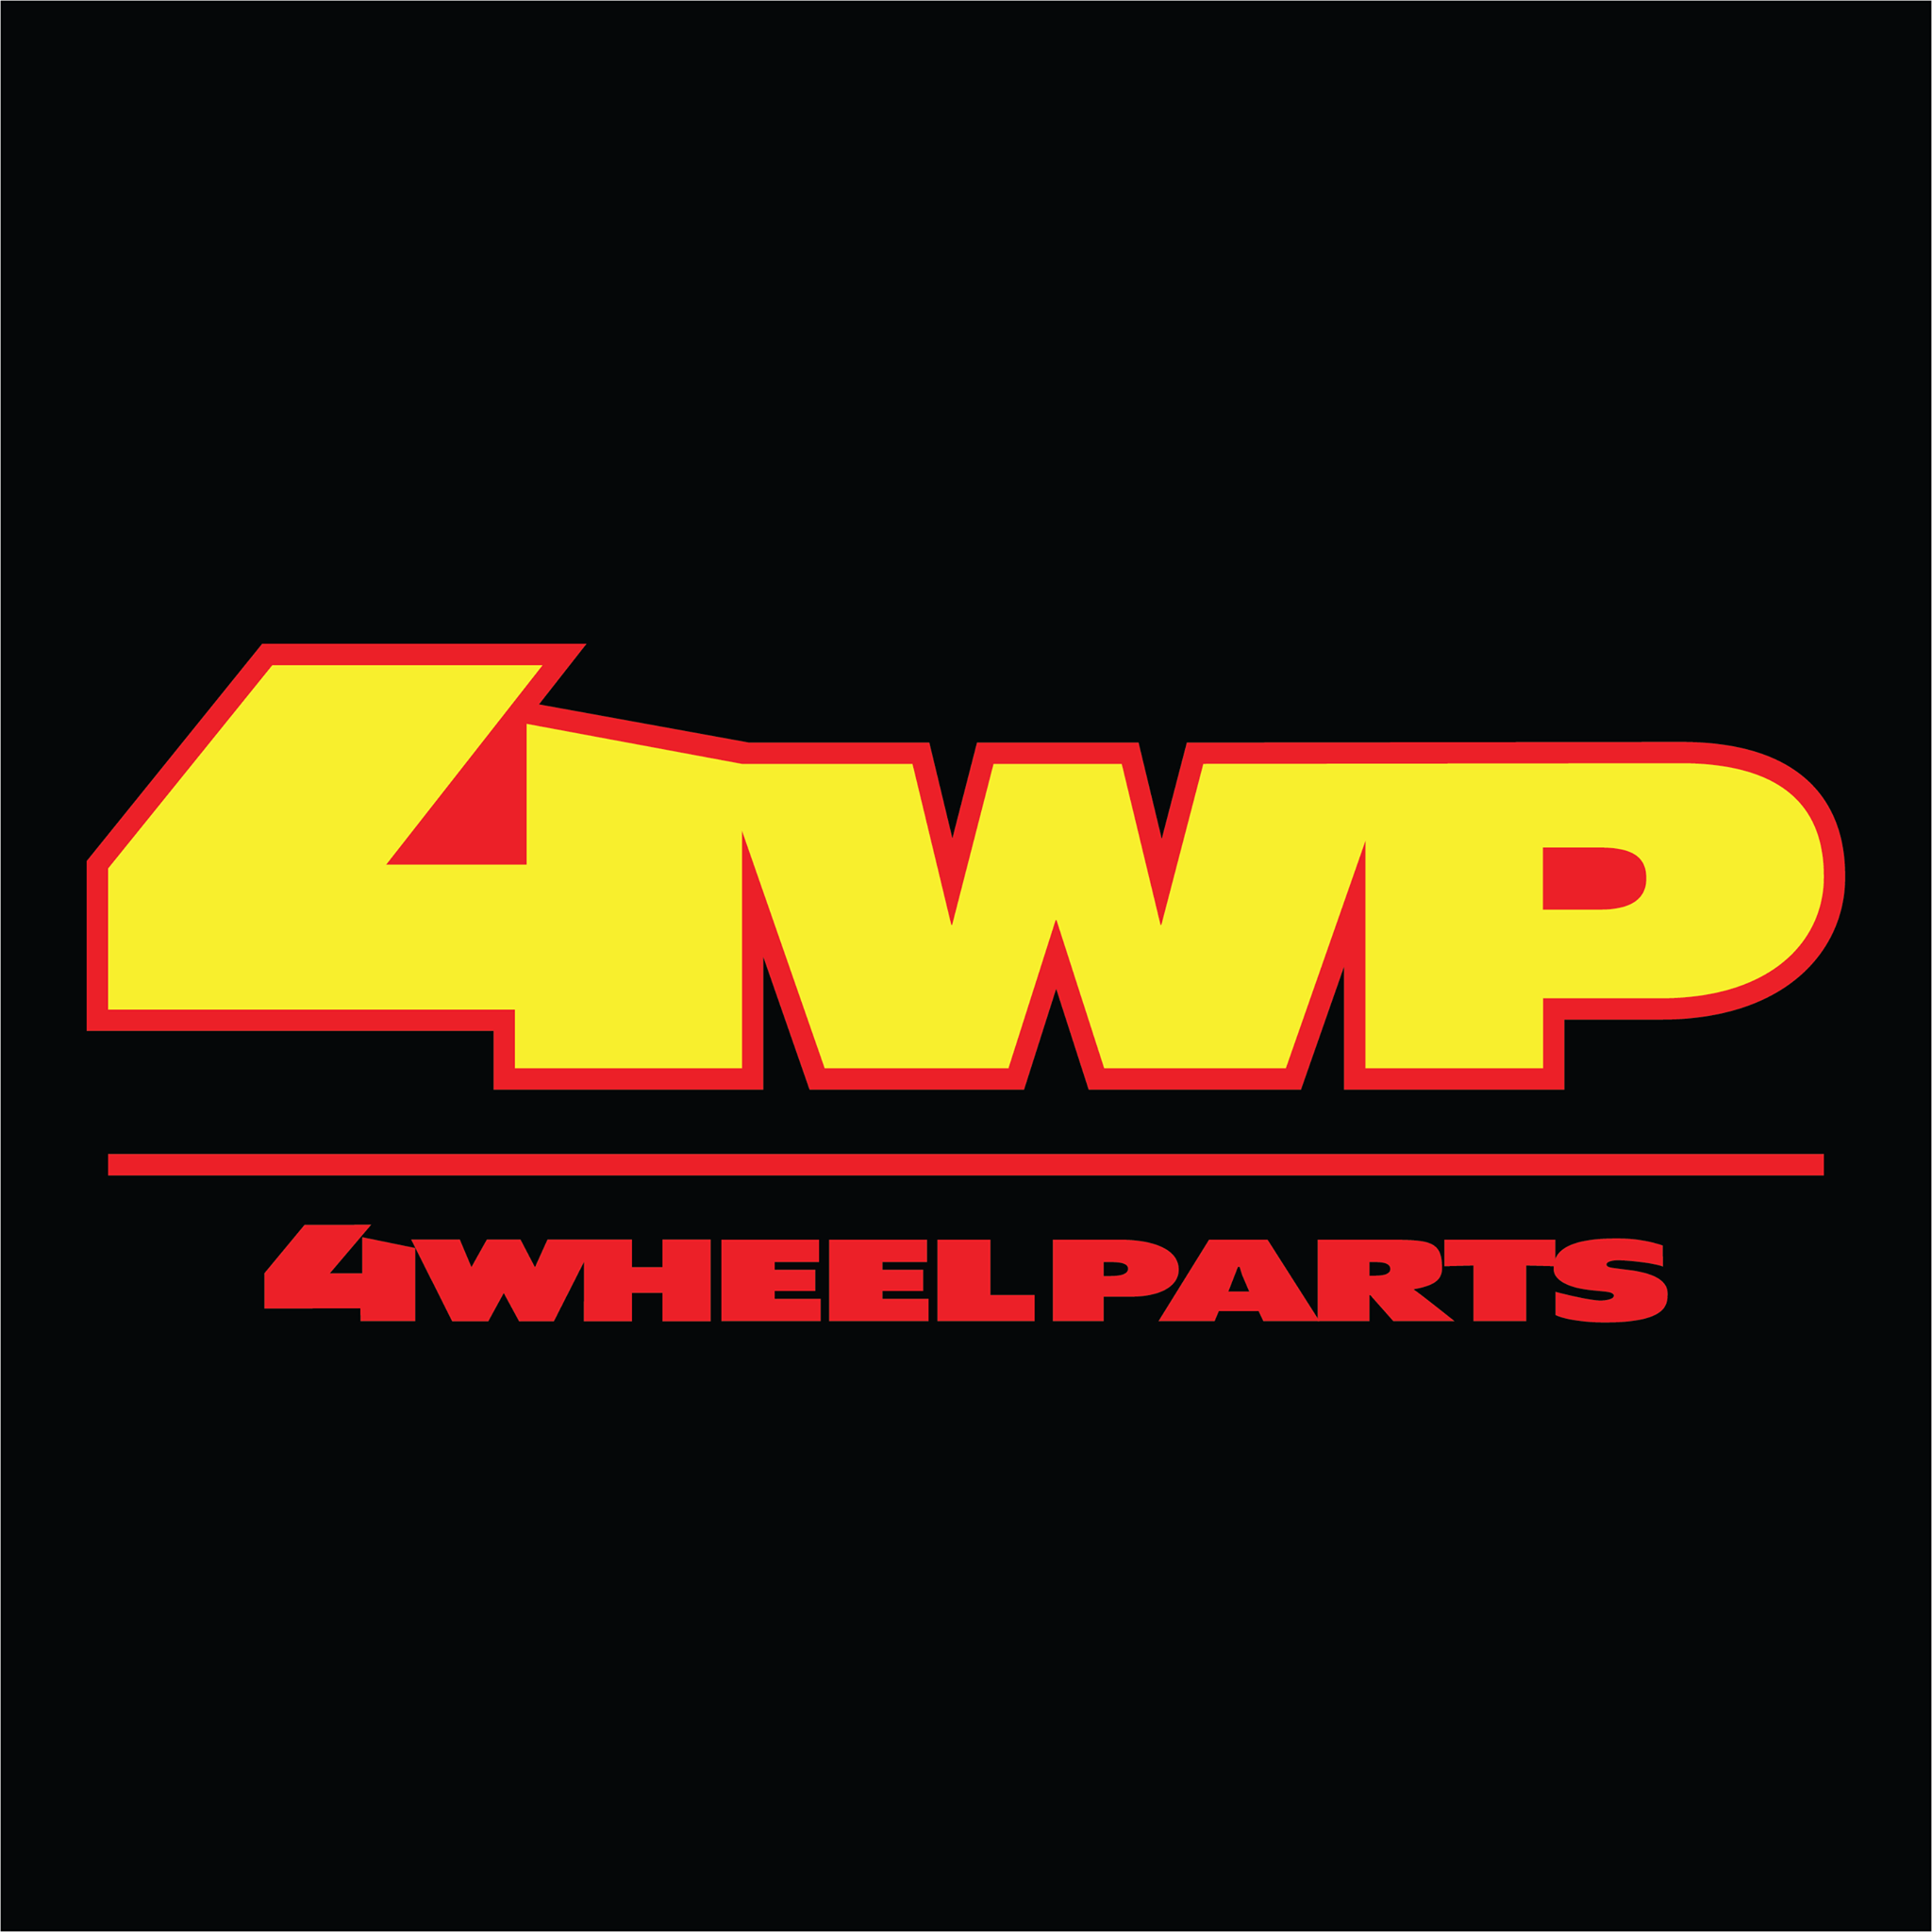 Company logo of 4 Wheel Parts